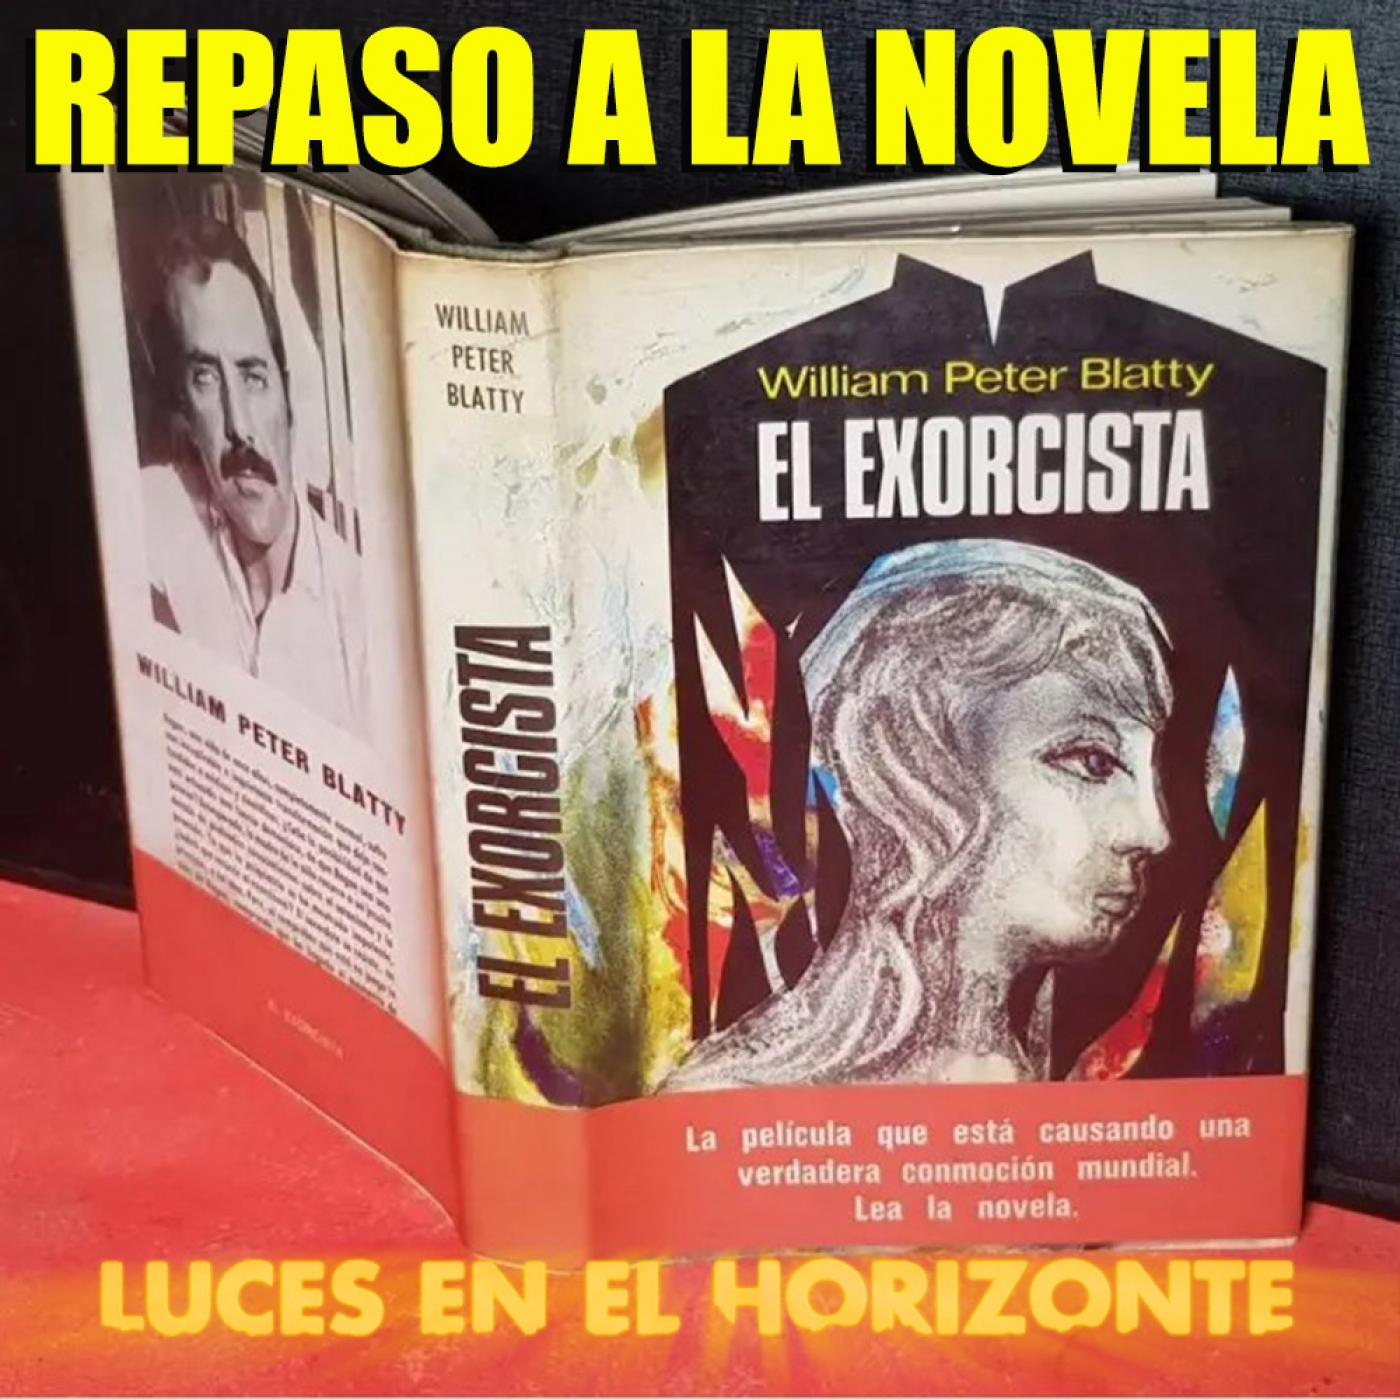 La novela de El exorcista - Luces en el Horizonte